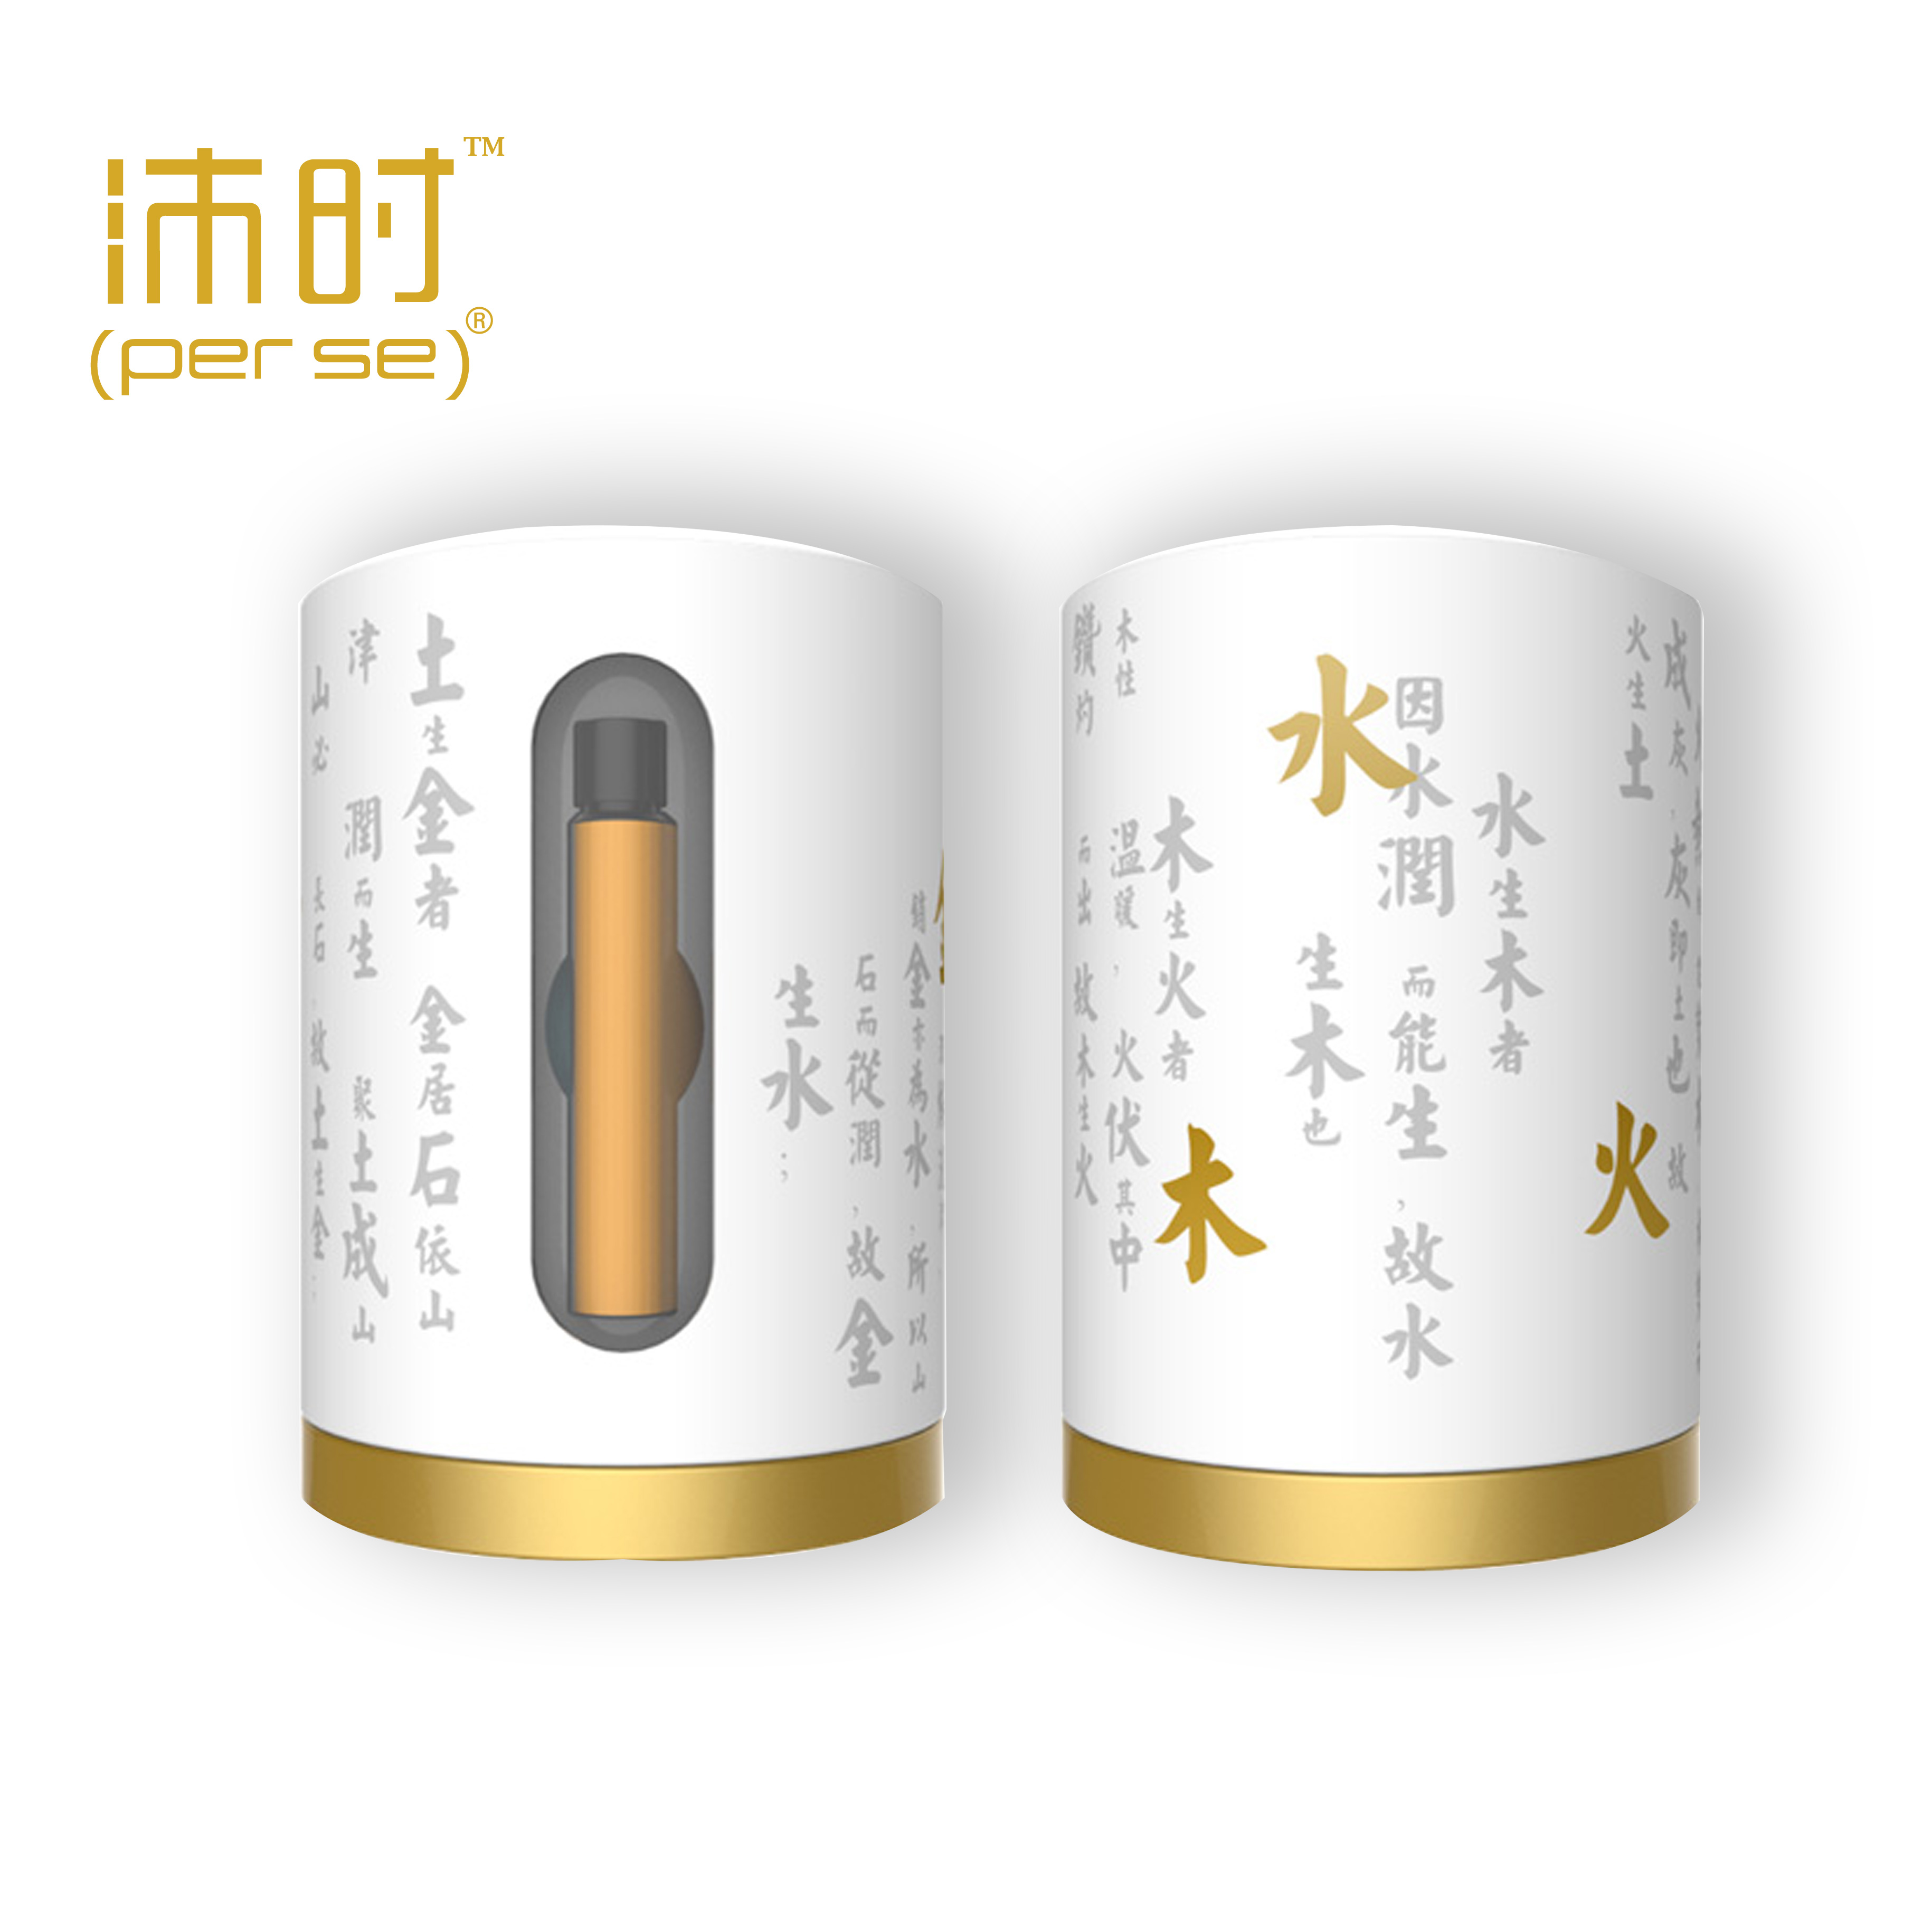 北京沛时健康科技有限公司-沛时五行纤瘦系列包装设计